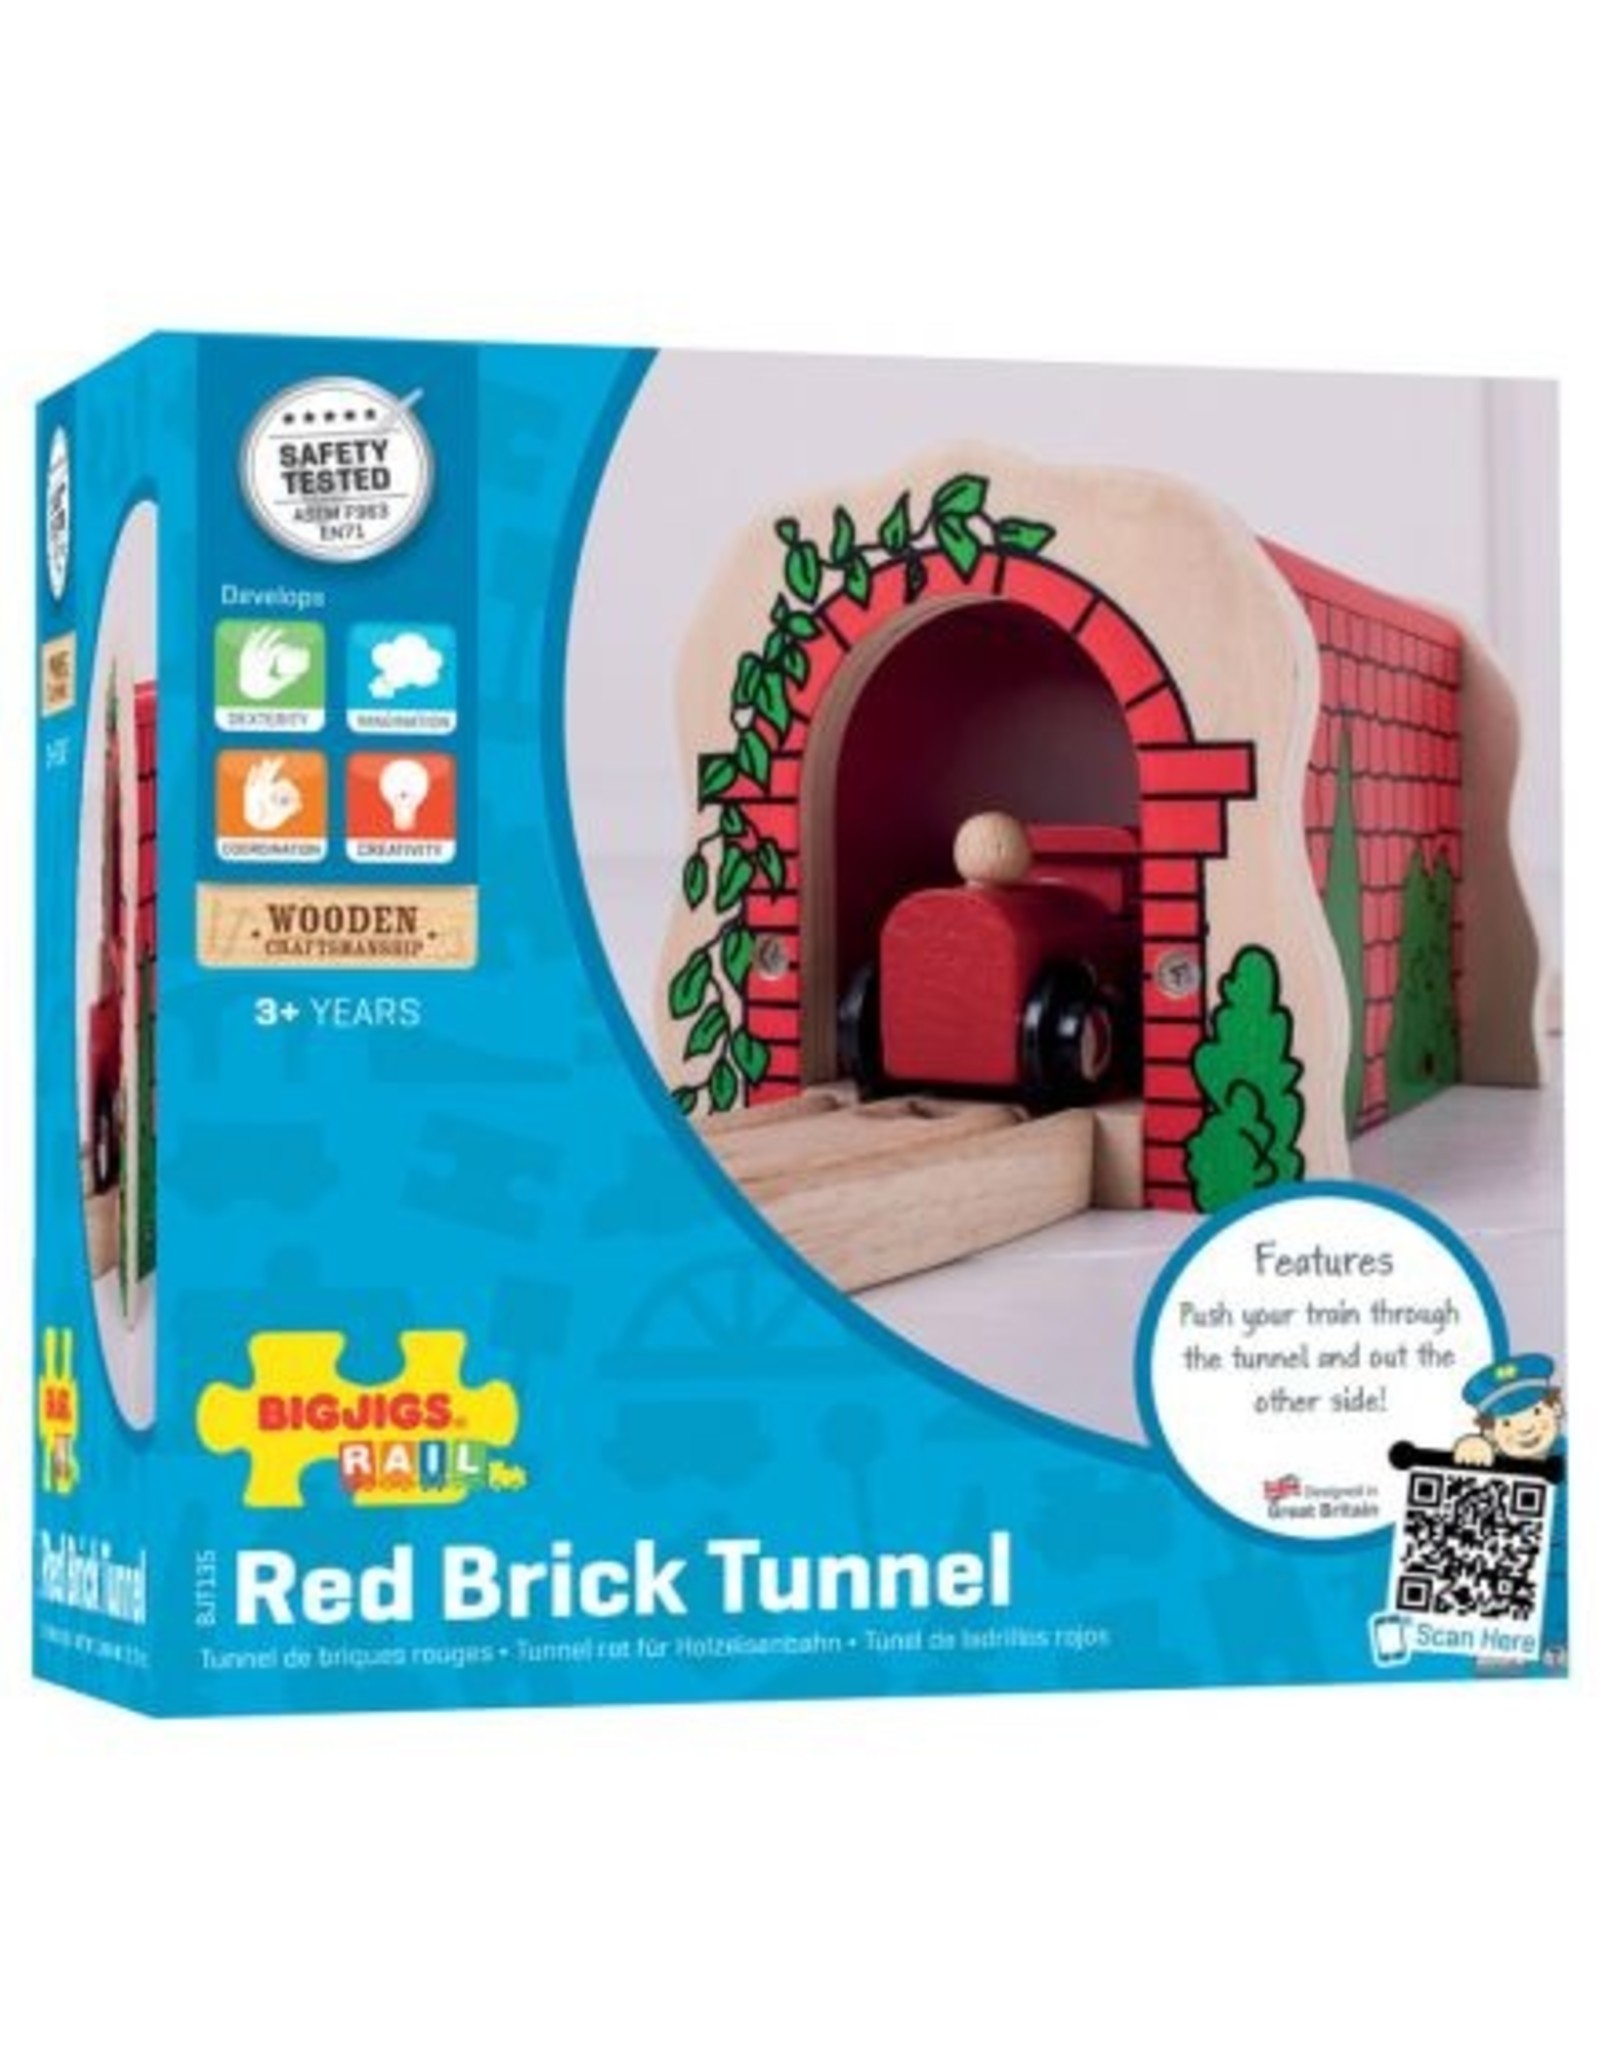 Train Tunnel Red Brick